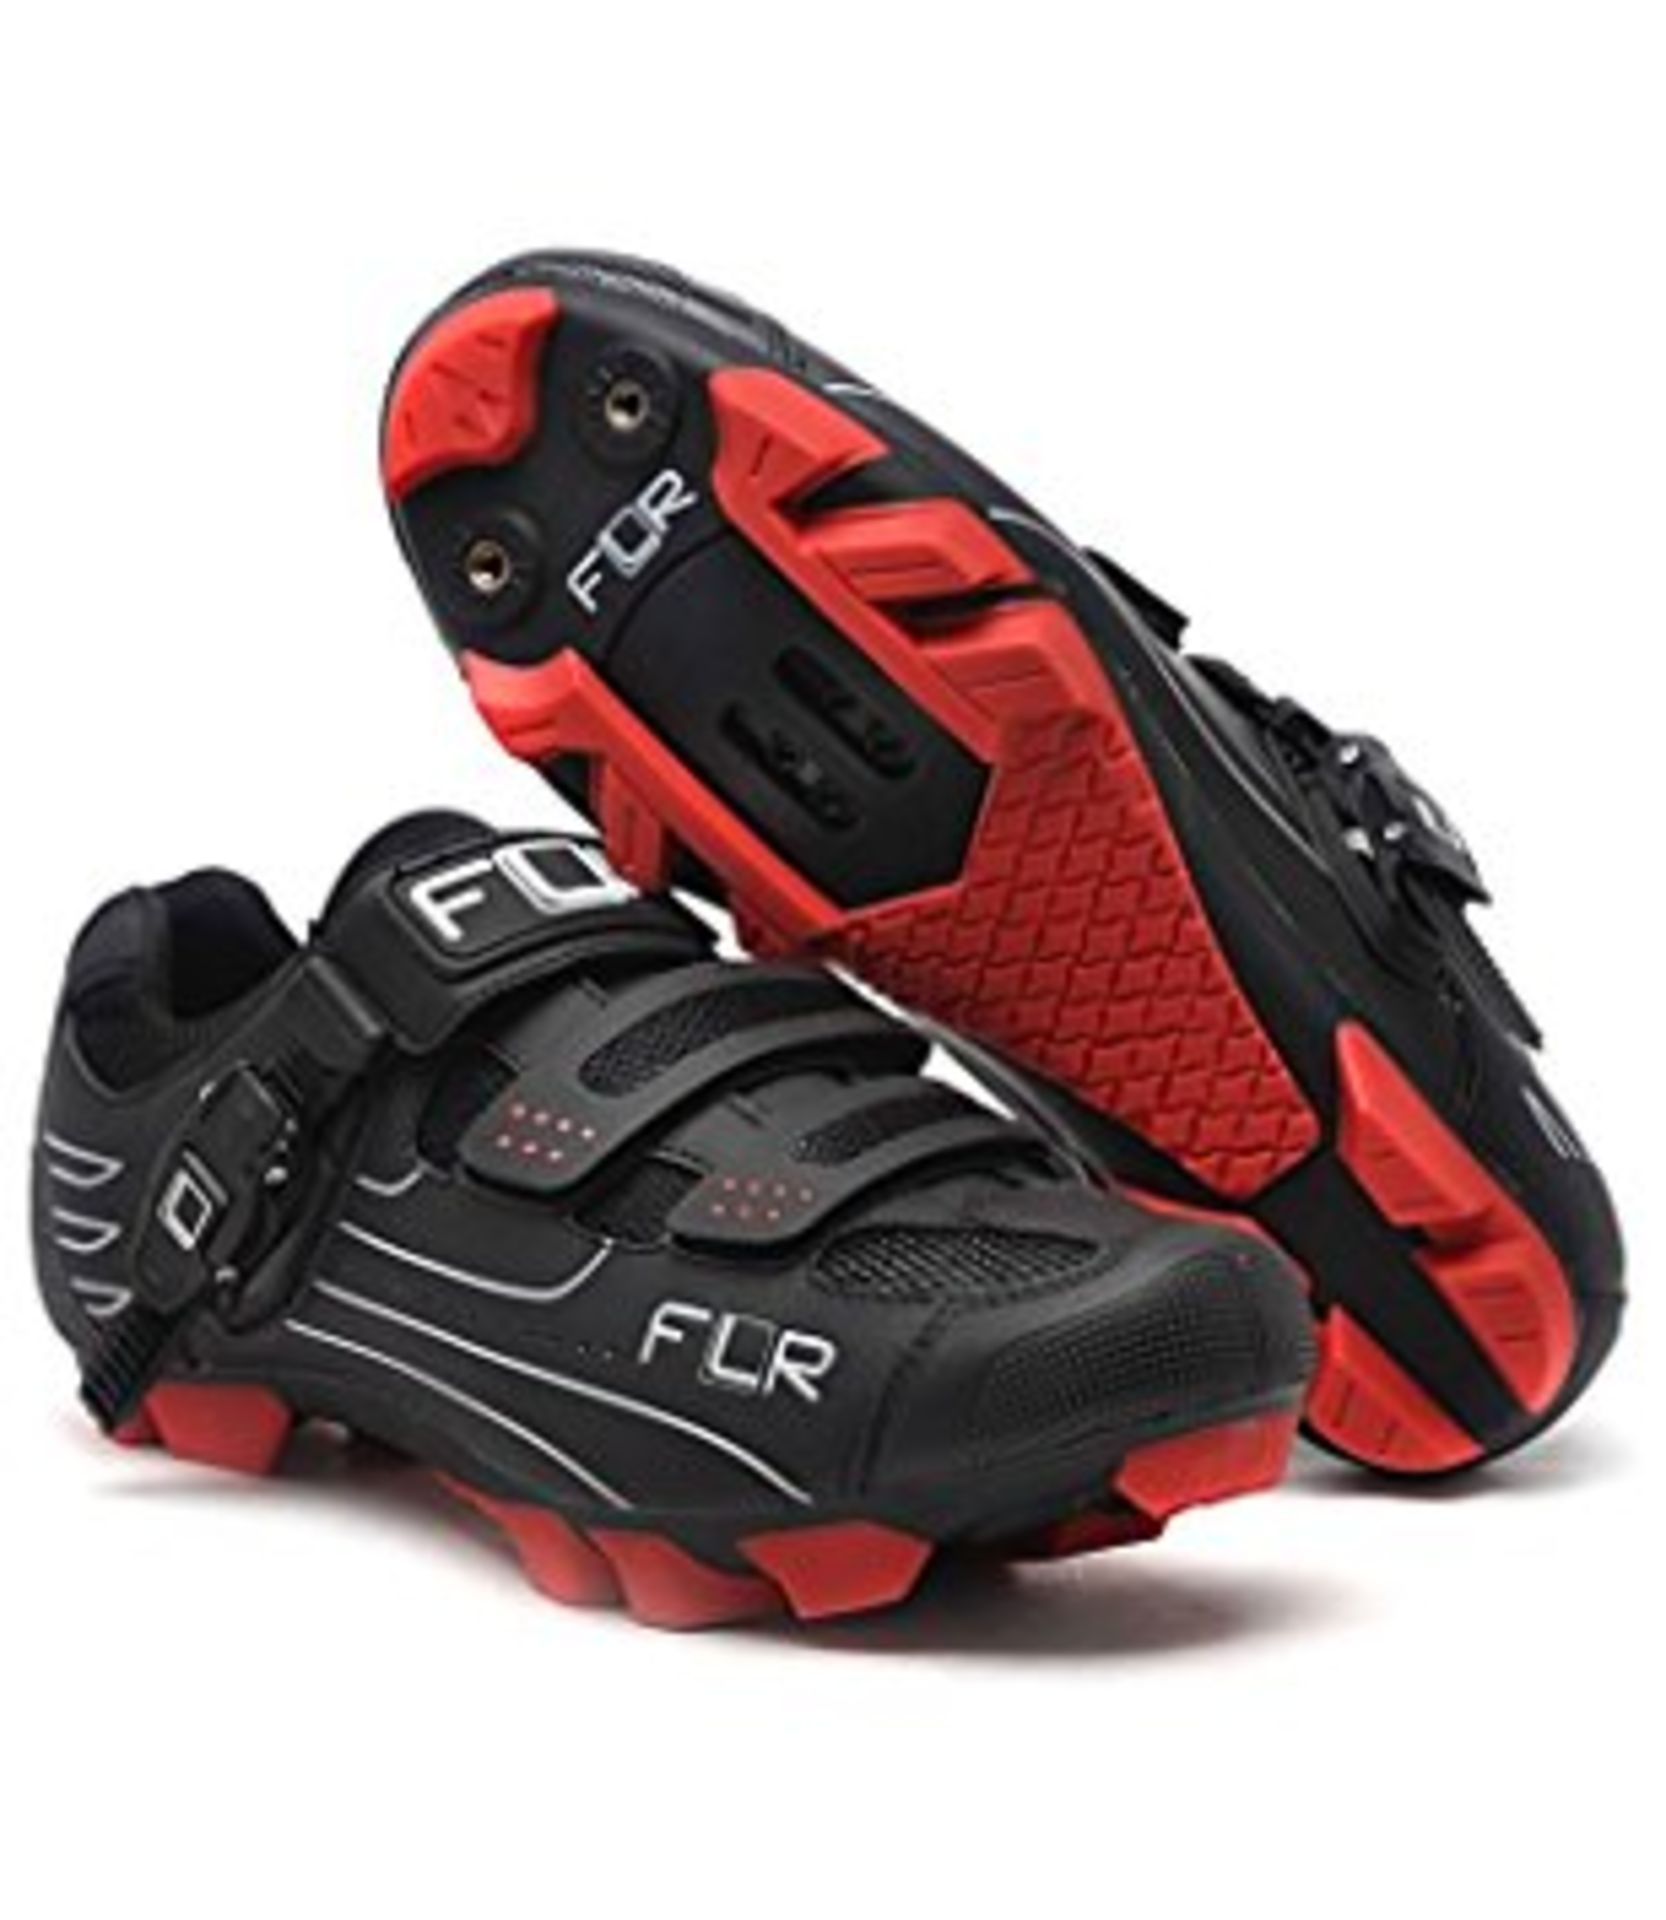 FLR F-65 II Black Cycling Shoes UK6.5 RRP £84.99